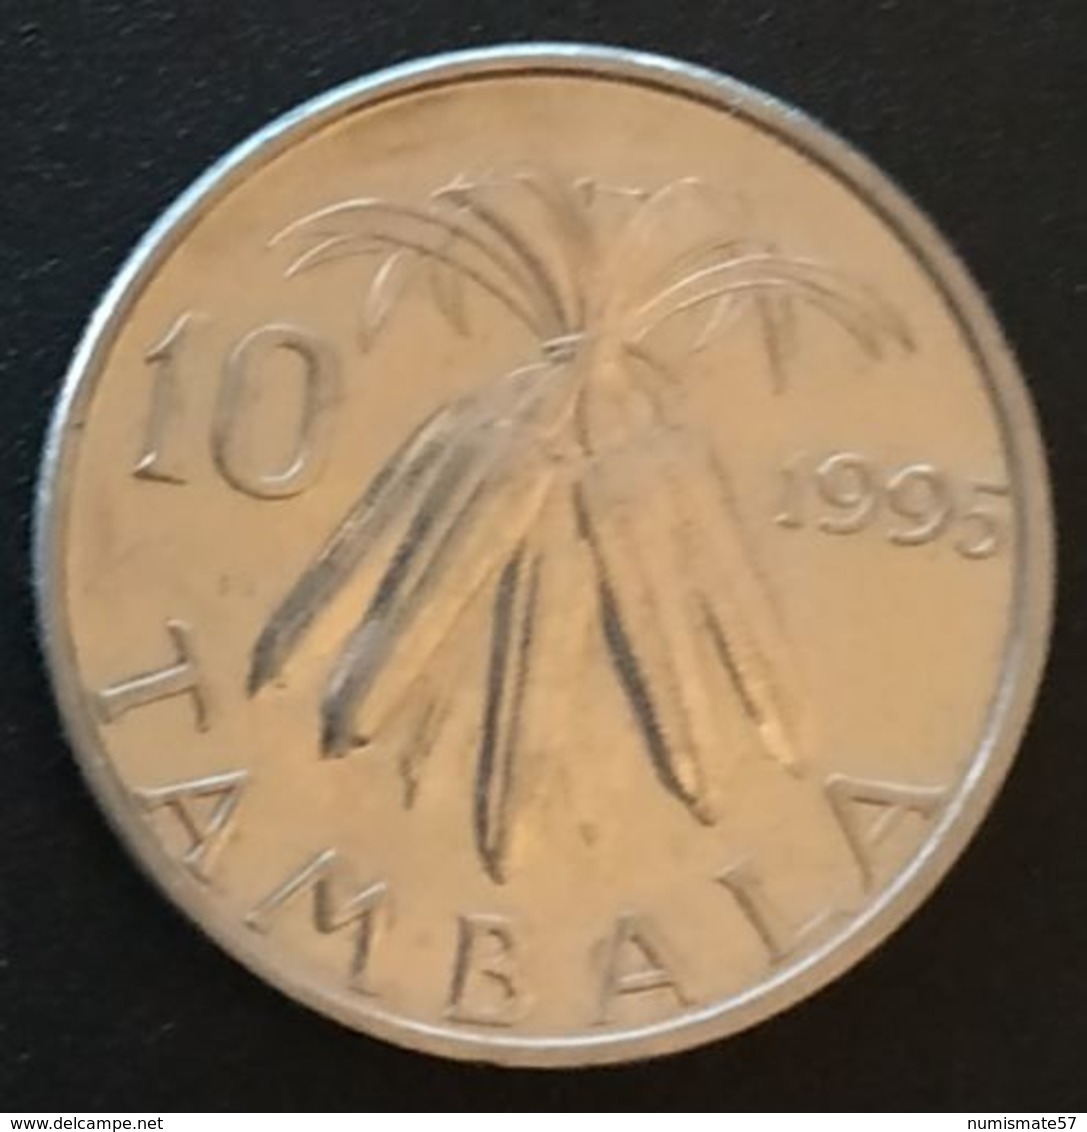 MALAWI - 10 TAMBALA 1995 - KM 27 - Malawi